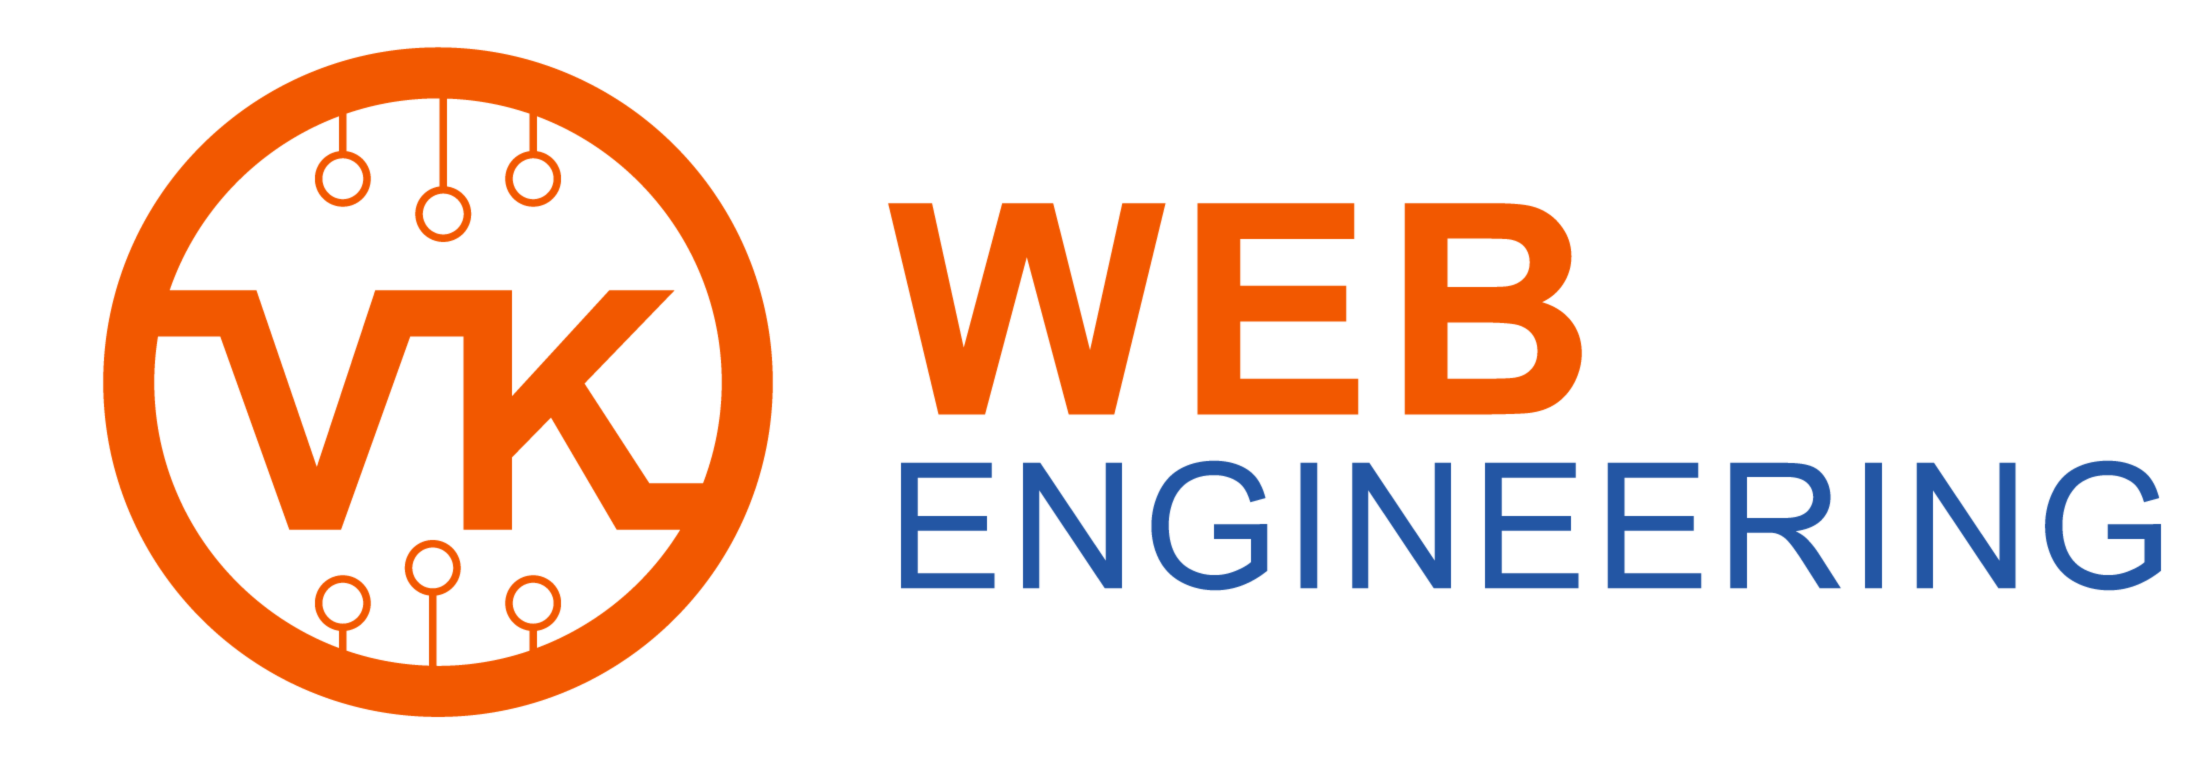 VK-Web-Engineering